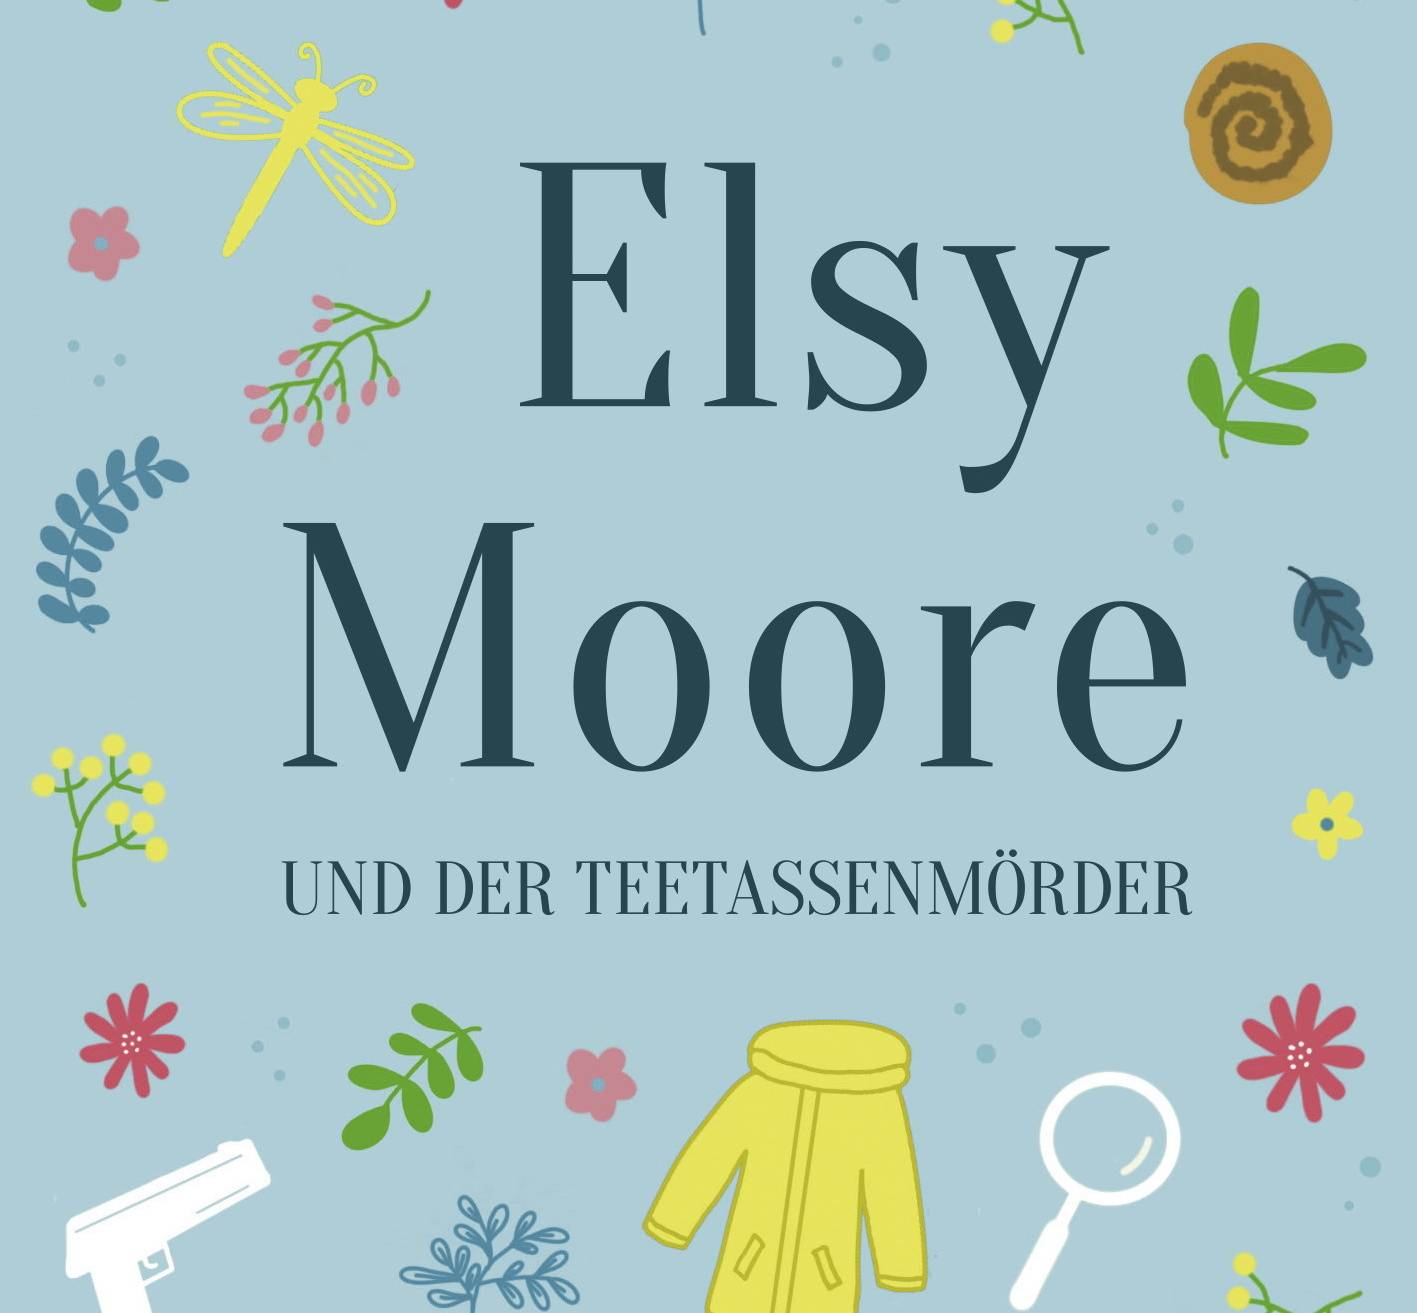  „Elsy Moore und der Teetassenmörder“ von Miri Smith.  